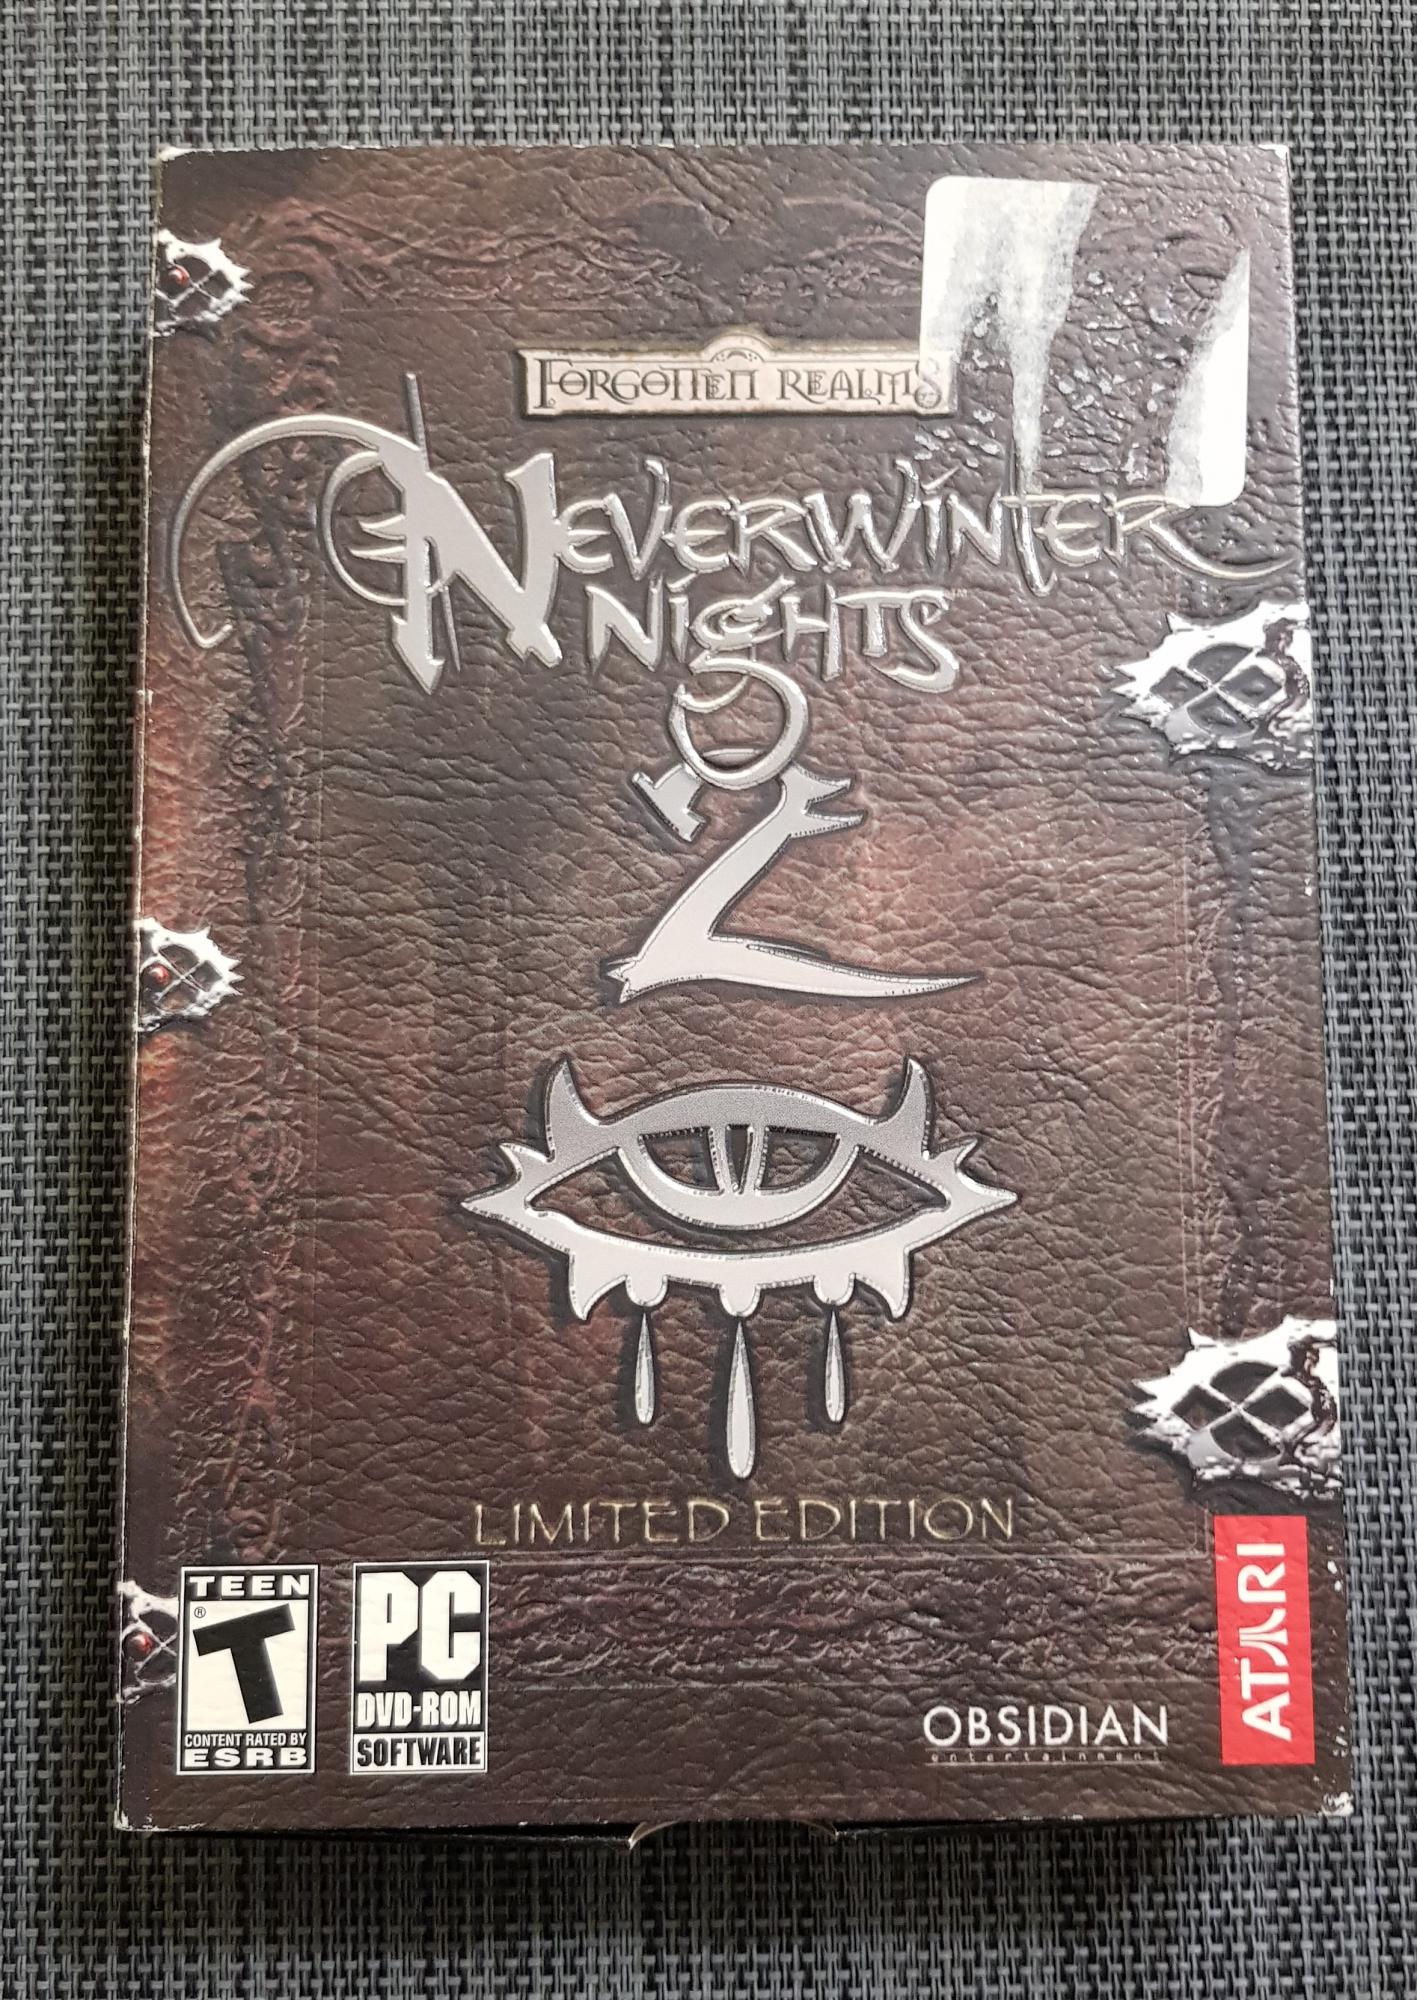 Игра Neverwinter Nights 2 - Limited Edition для PC в Москве 89256150066 купить 1